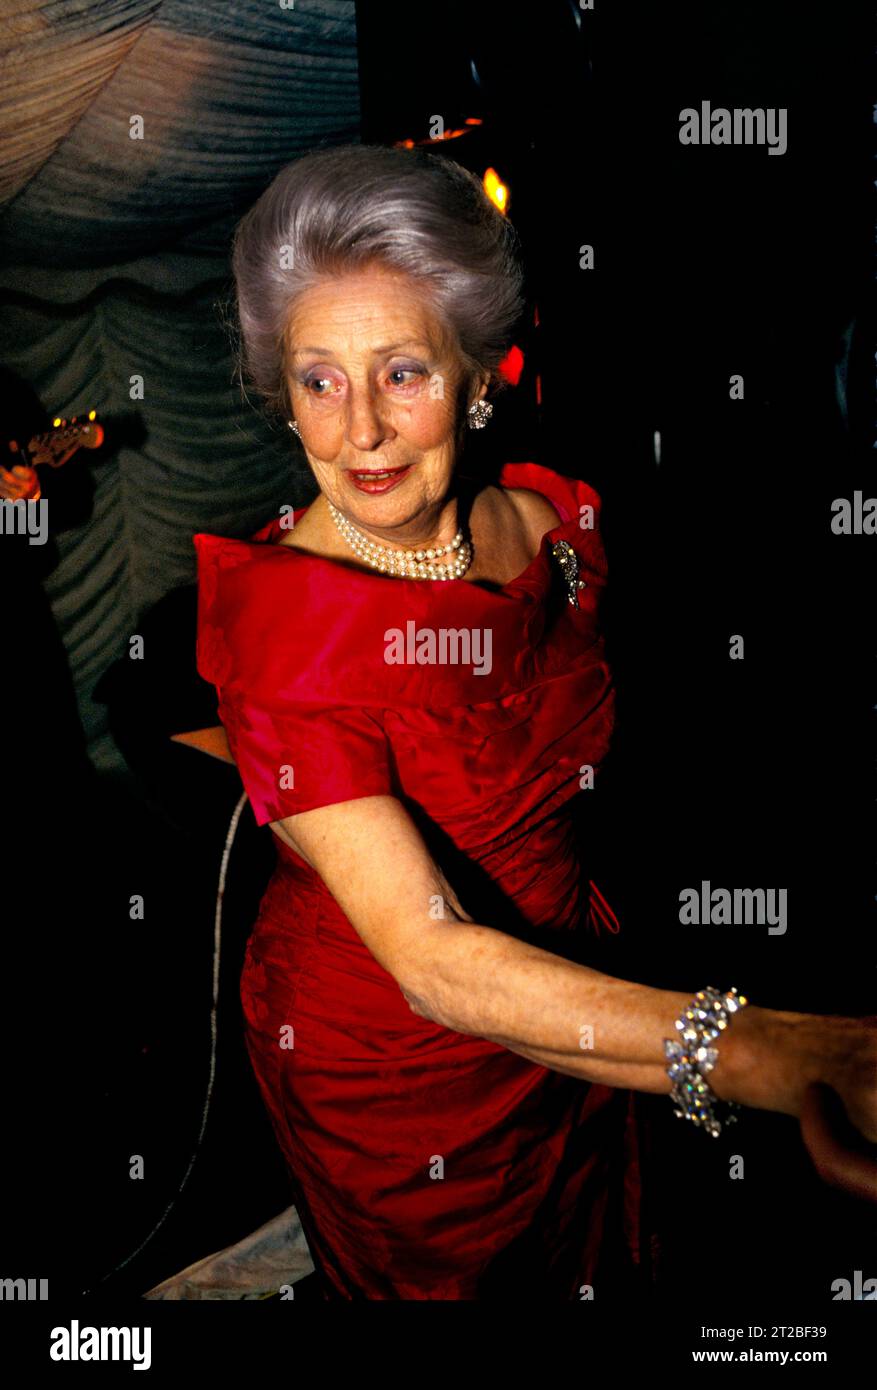 Wohlhabende ältere, mit Juwelen geschmückte Dame mit Edelsteinen, Diamanten und Armband und Perlenkette. Sie ließ sich wahrscheinlich an dem Nachmittag Haare machen. Gestylt wie Prinzessin Anne in einen geschwollenen Bouffant, der in einen französischen Faltenfrisur gewickelt wird. Trägt ein rotes Ballkleid und einen roten Lippenstift. Dinner Dance im Tysoe Manor, Tysoe, Warwickshire, England April 1982. HOMER SYKES AUS DEN 1980ER JAHREN. Stockfoto